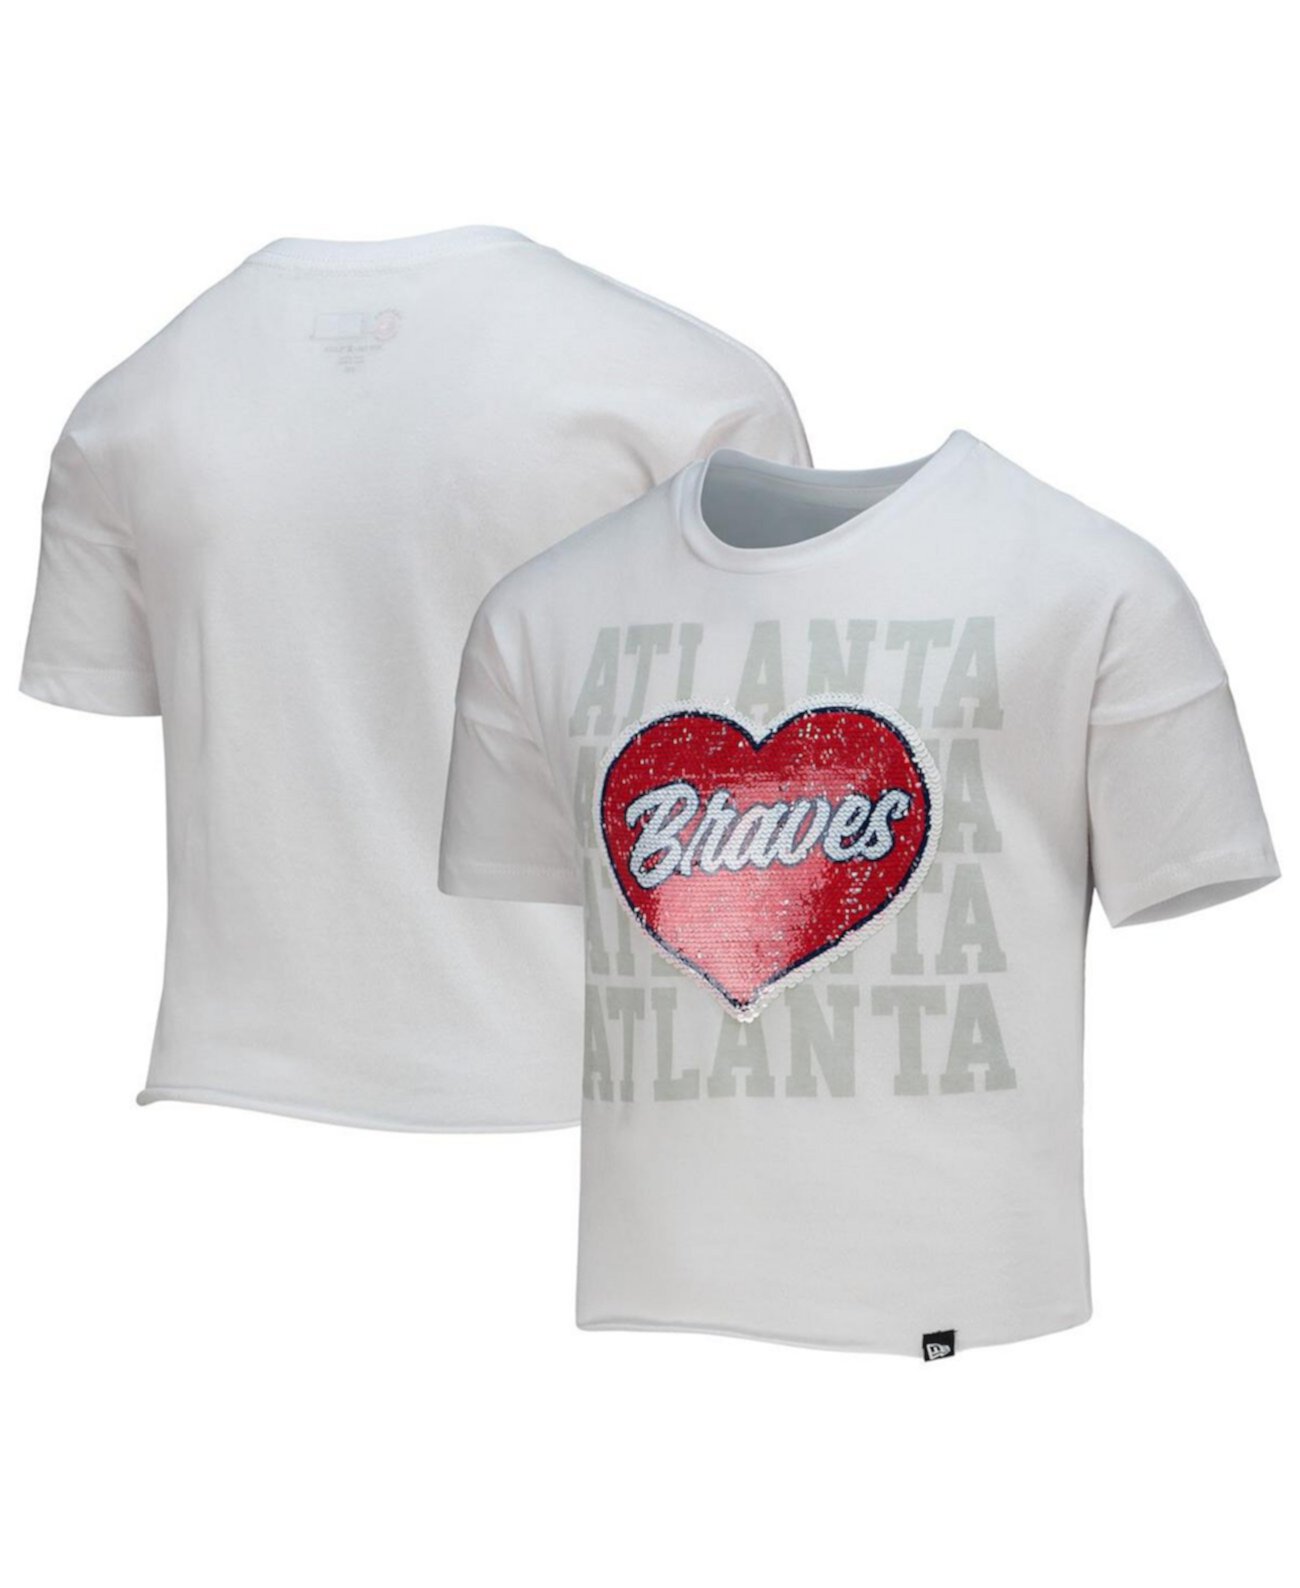 Белый укороченный топ с пайетками и сердечками для девочек Youth Girls White Atlanta Braves New Era